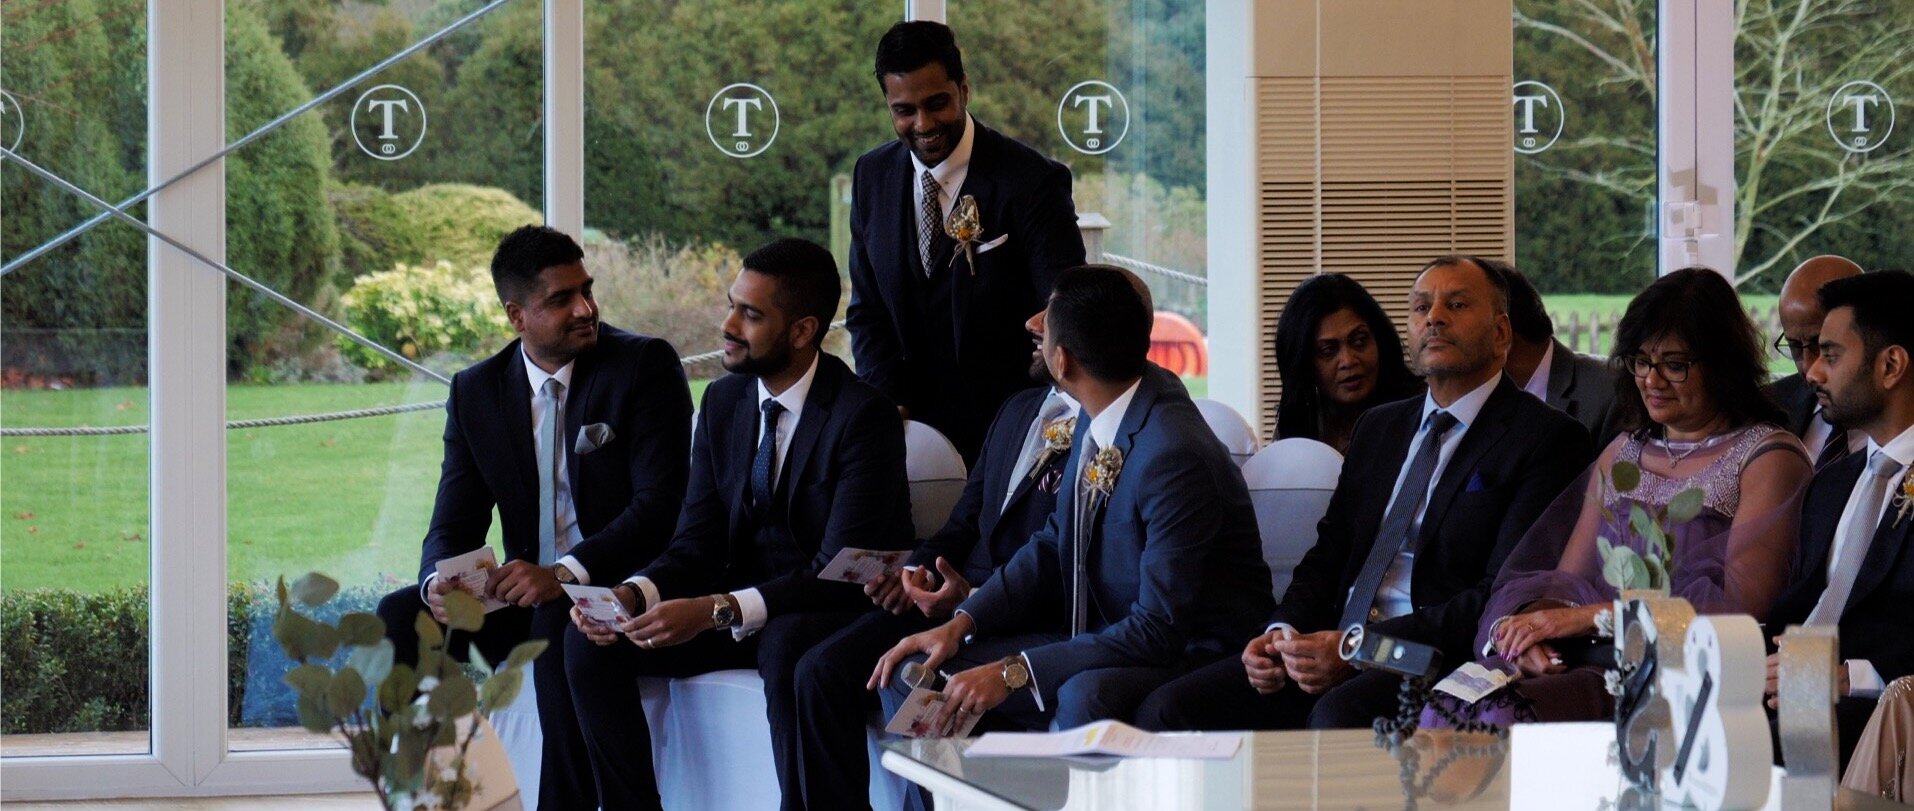 Indian groomsmen wedding video.jpg